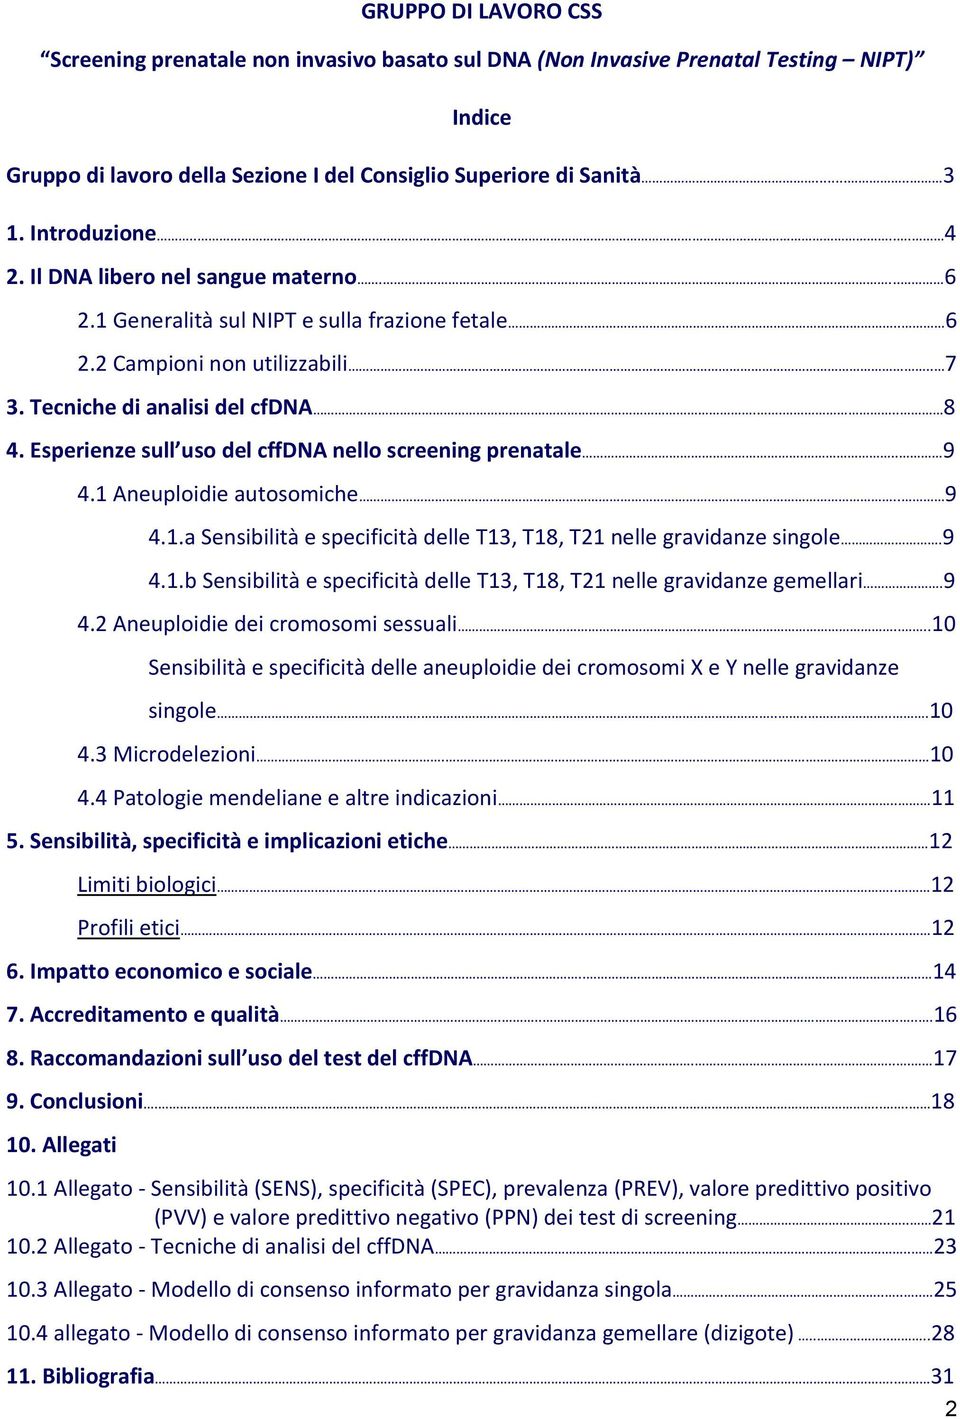 Esperienze sull uso del cffdna nello screening prenatale... 9 4.1 Aneuploidie autosomiche.. 9 4.1.a Sensibilità e specificità delle T13, T18, T21 nelle gravidanze singole.9 4.1.b Sensibilità e specificità delle T13, T18, T21 nelle gravidanze gemellari.